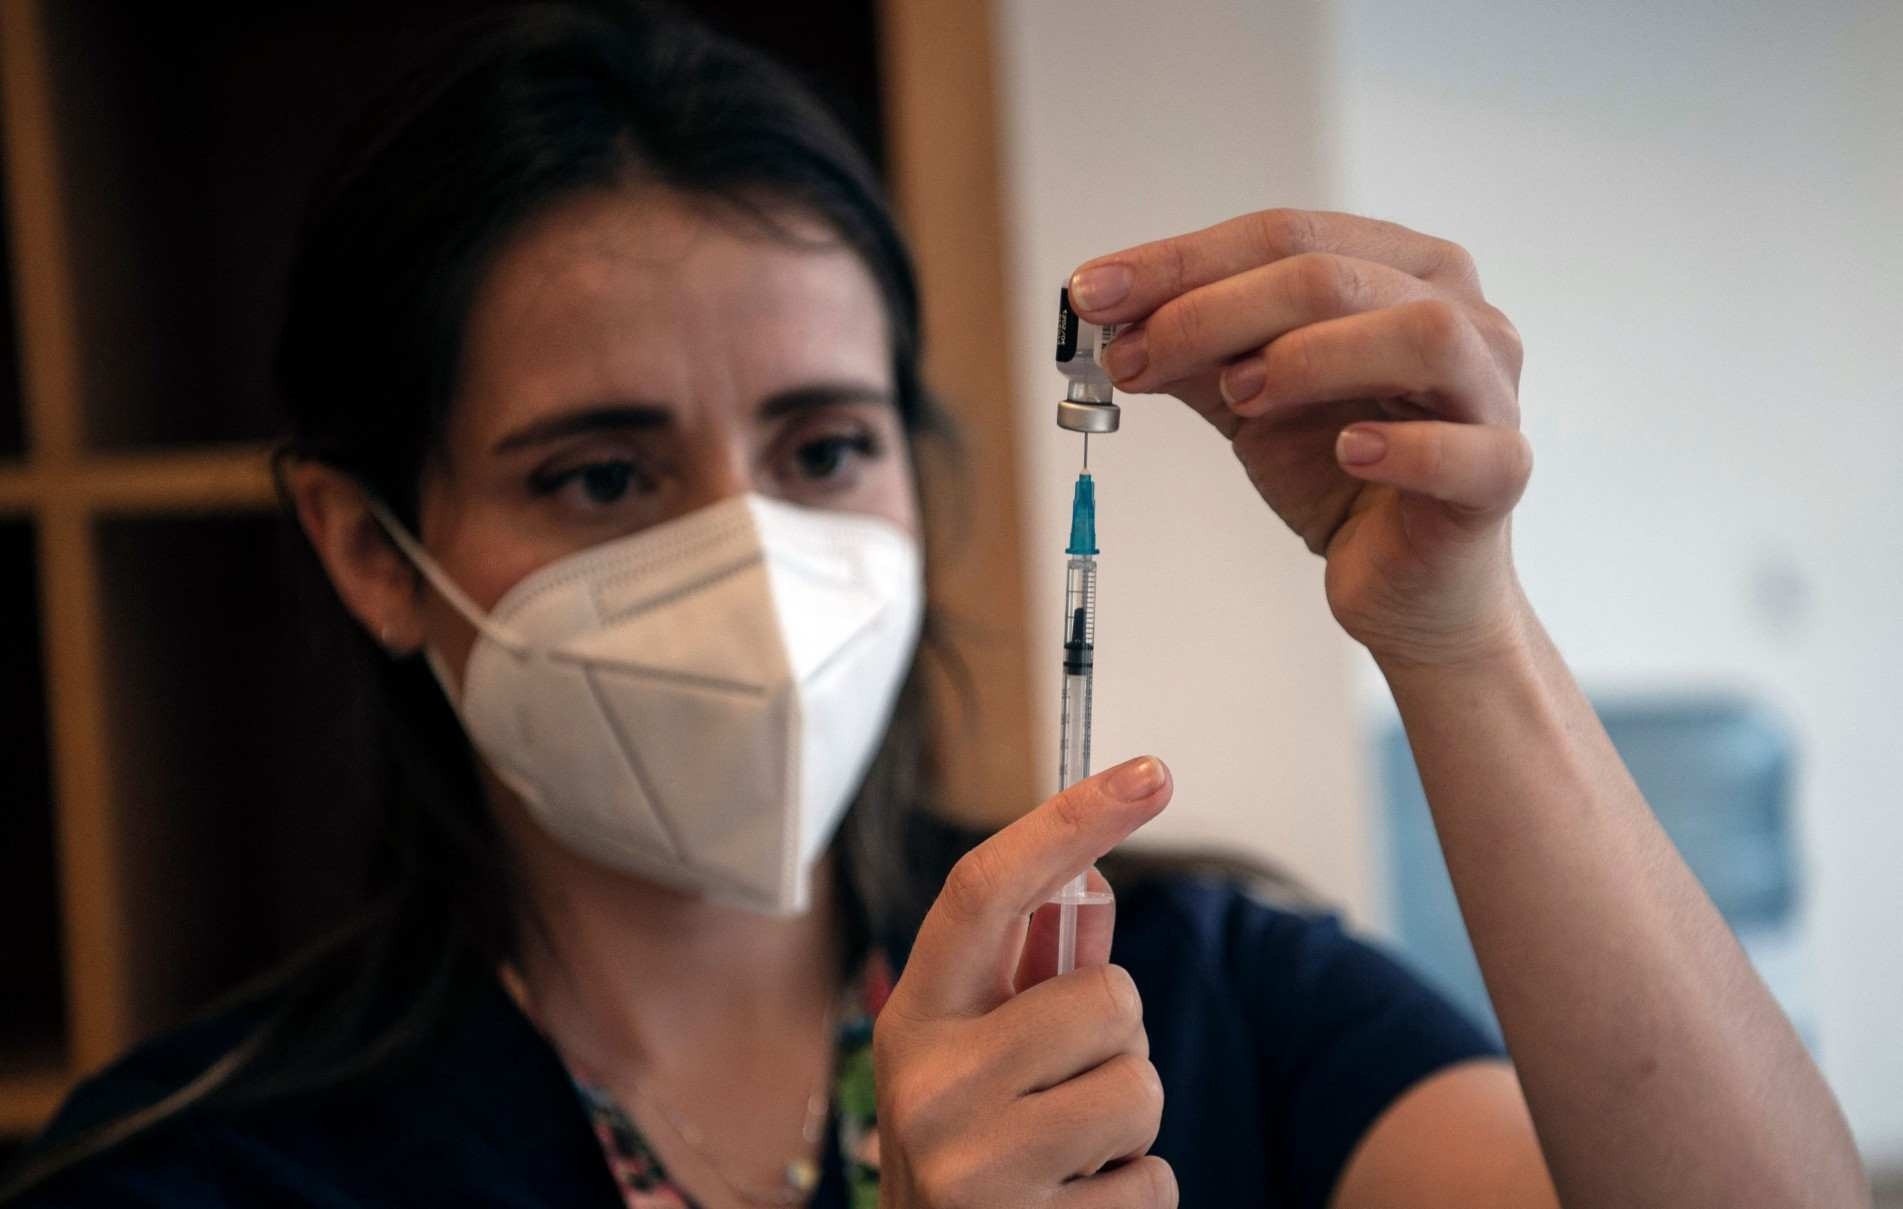  O objetivo do Butantan é combinar os componentes das vacinas da gripe e da Covid-19, para criar uma única